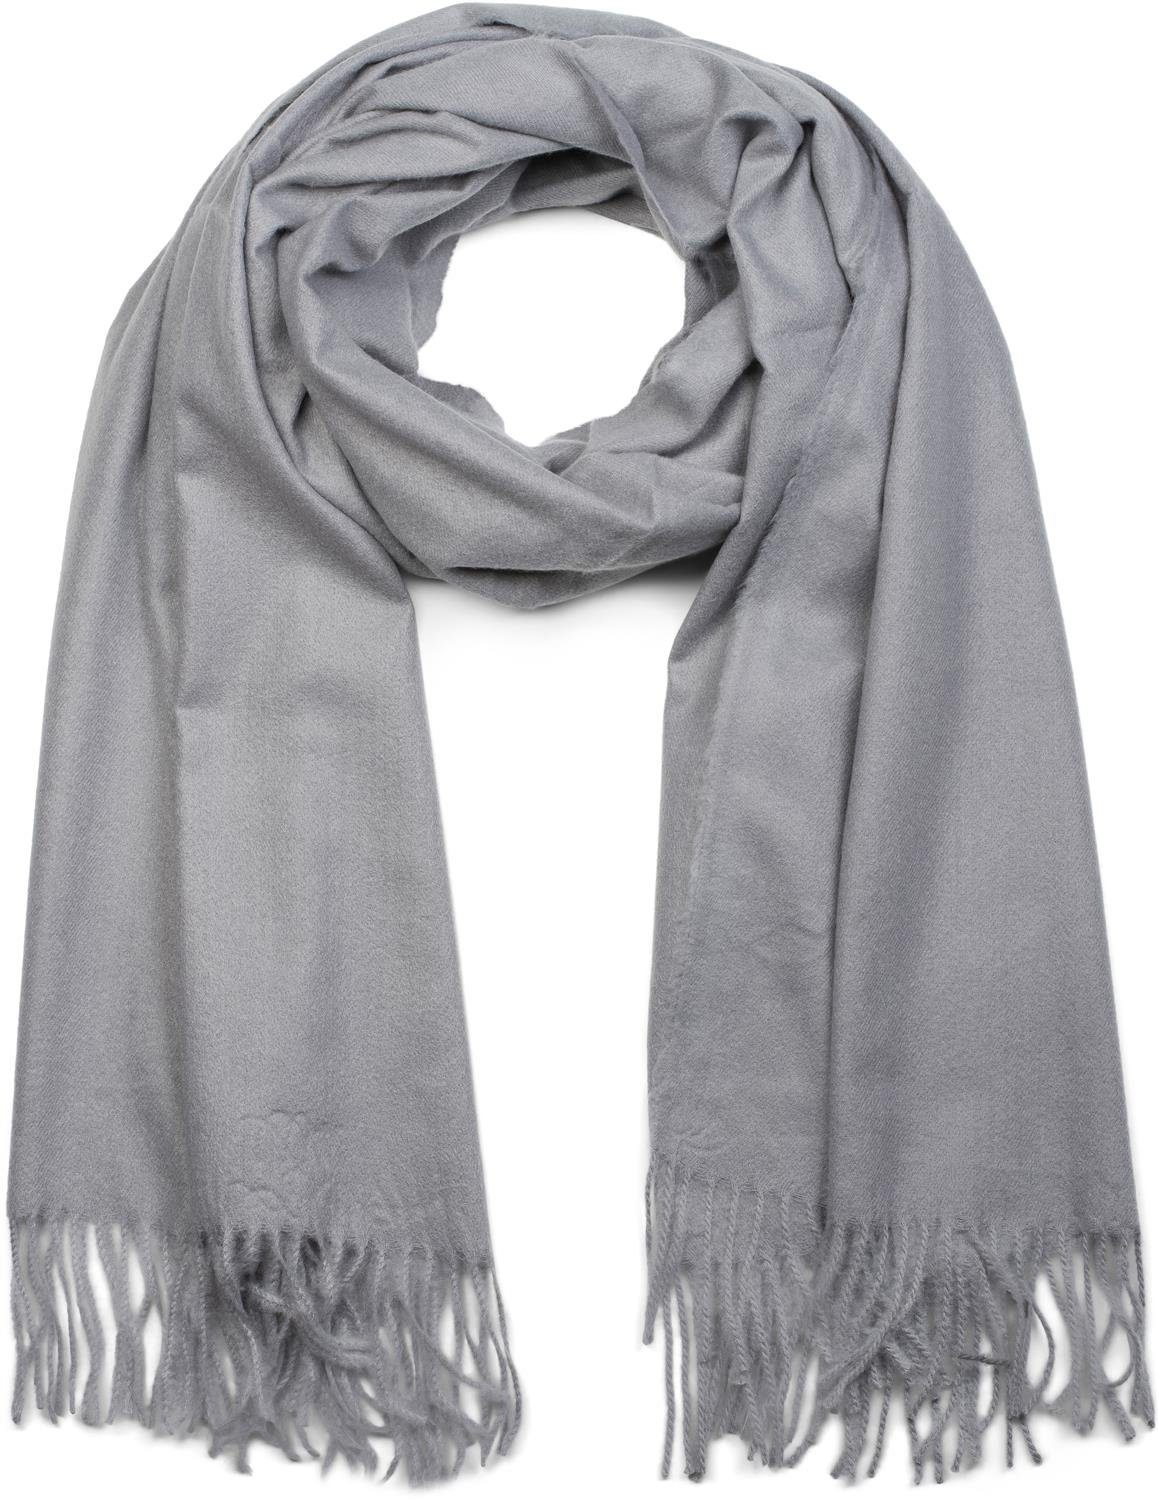 Graue Schals für Damen online kaufen | OTTO